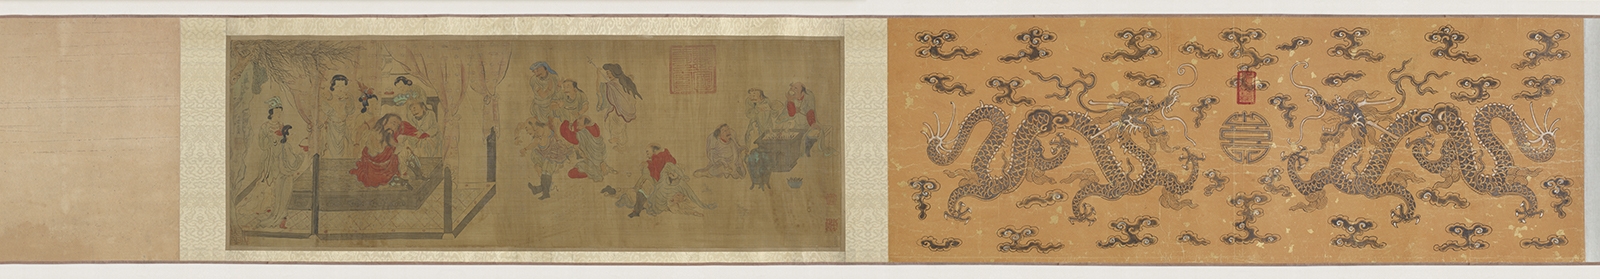 元 张雨 游牧狂欢图卷绢本30.4×89